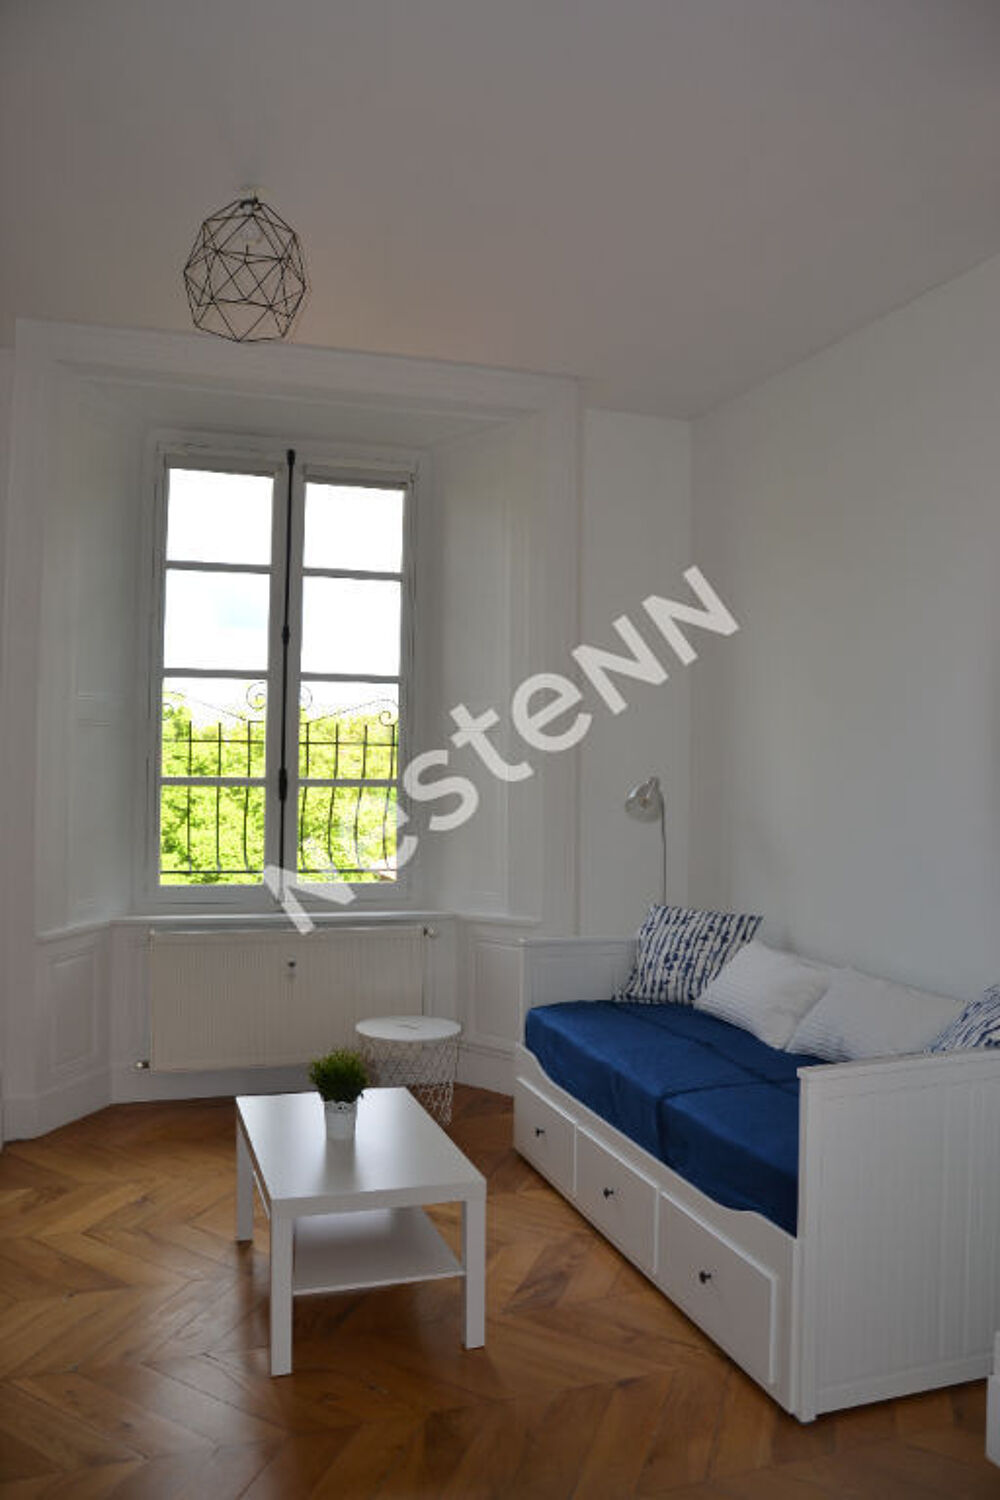 Location Appartement Appartement Saint Maurice De Lignon 1 pice(s) 32.55 m2 ( proche Yssingeaux) Saint maurice de lignon